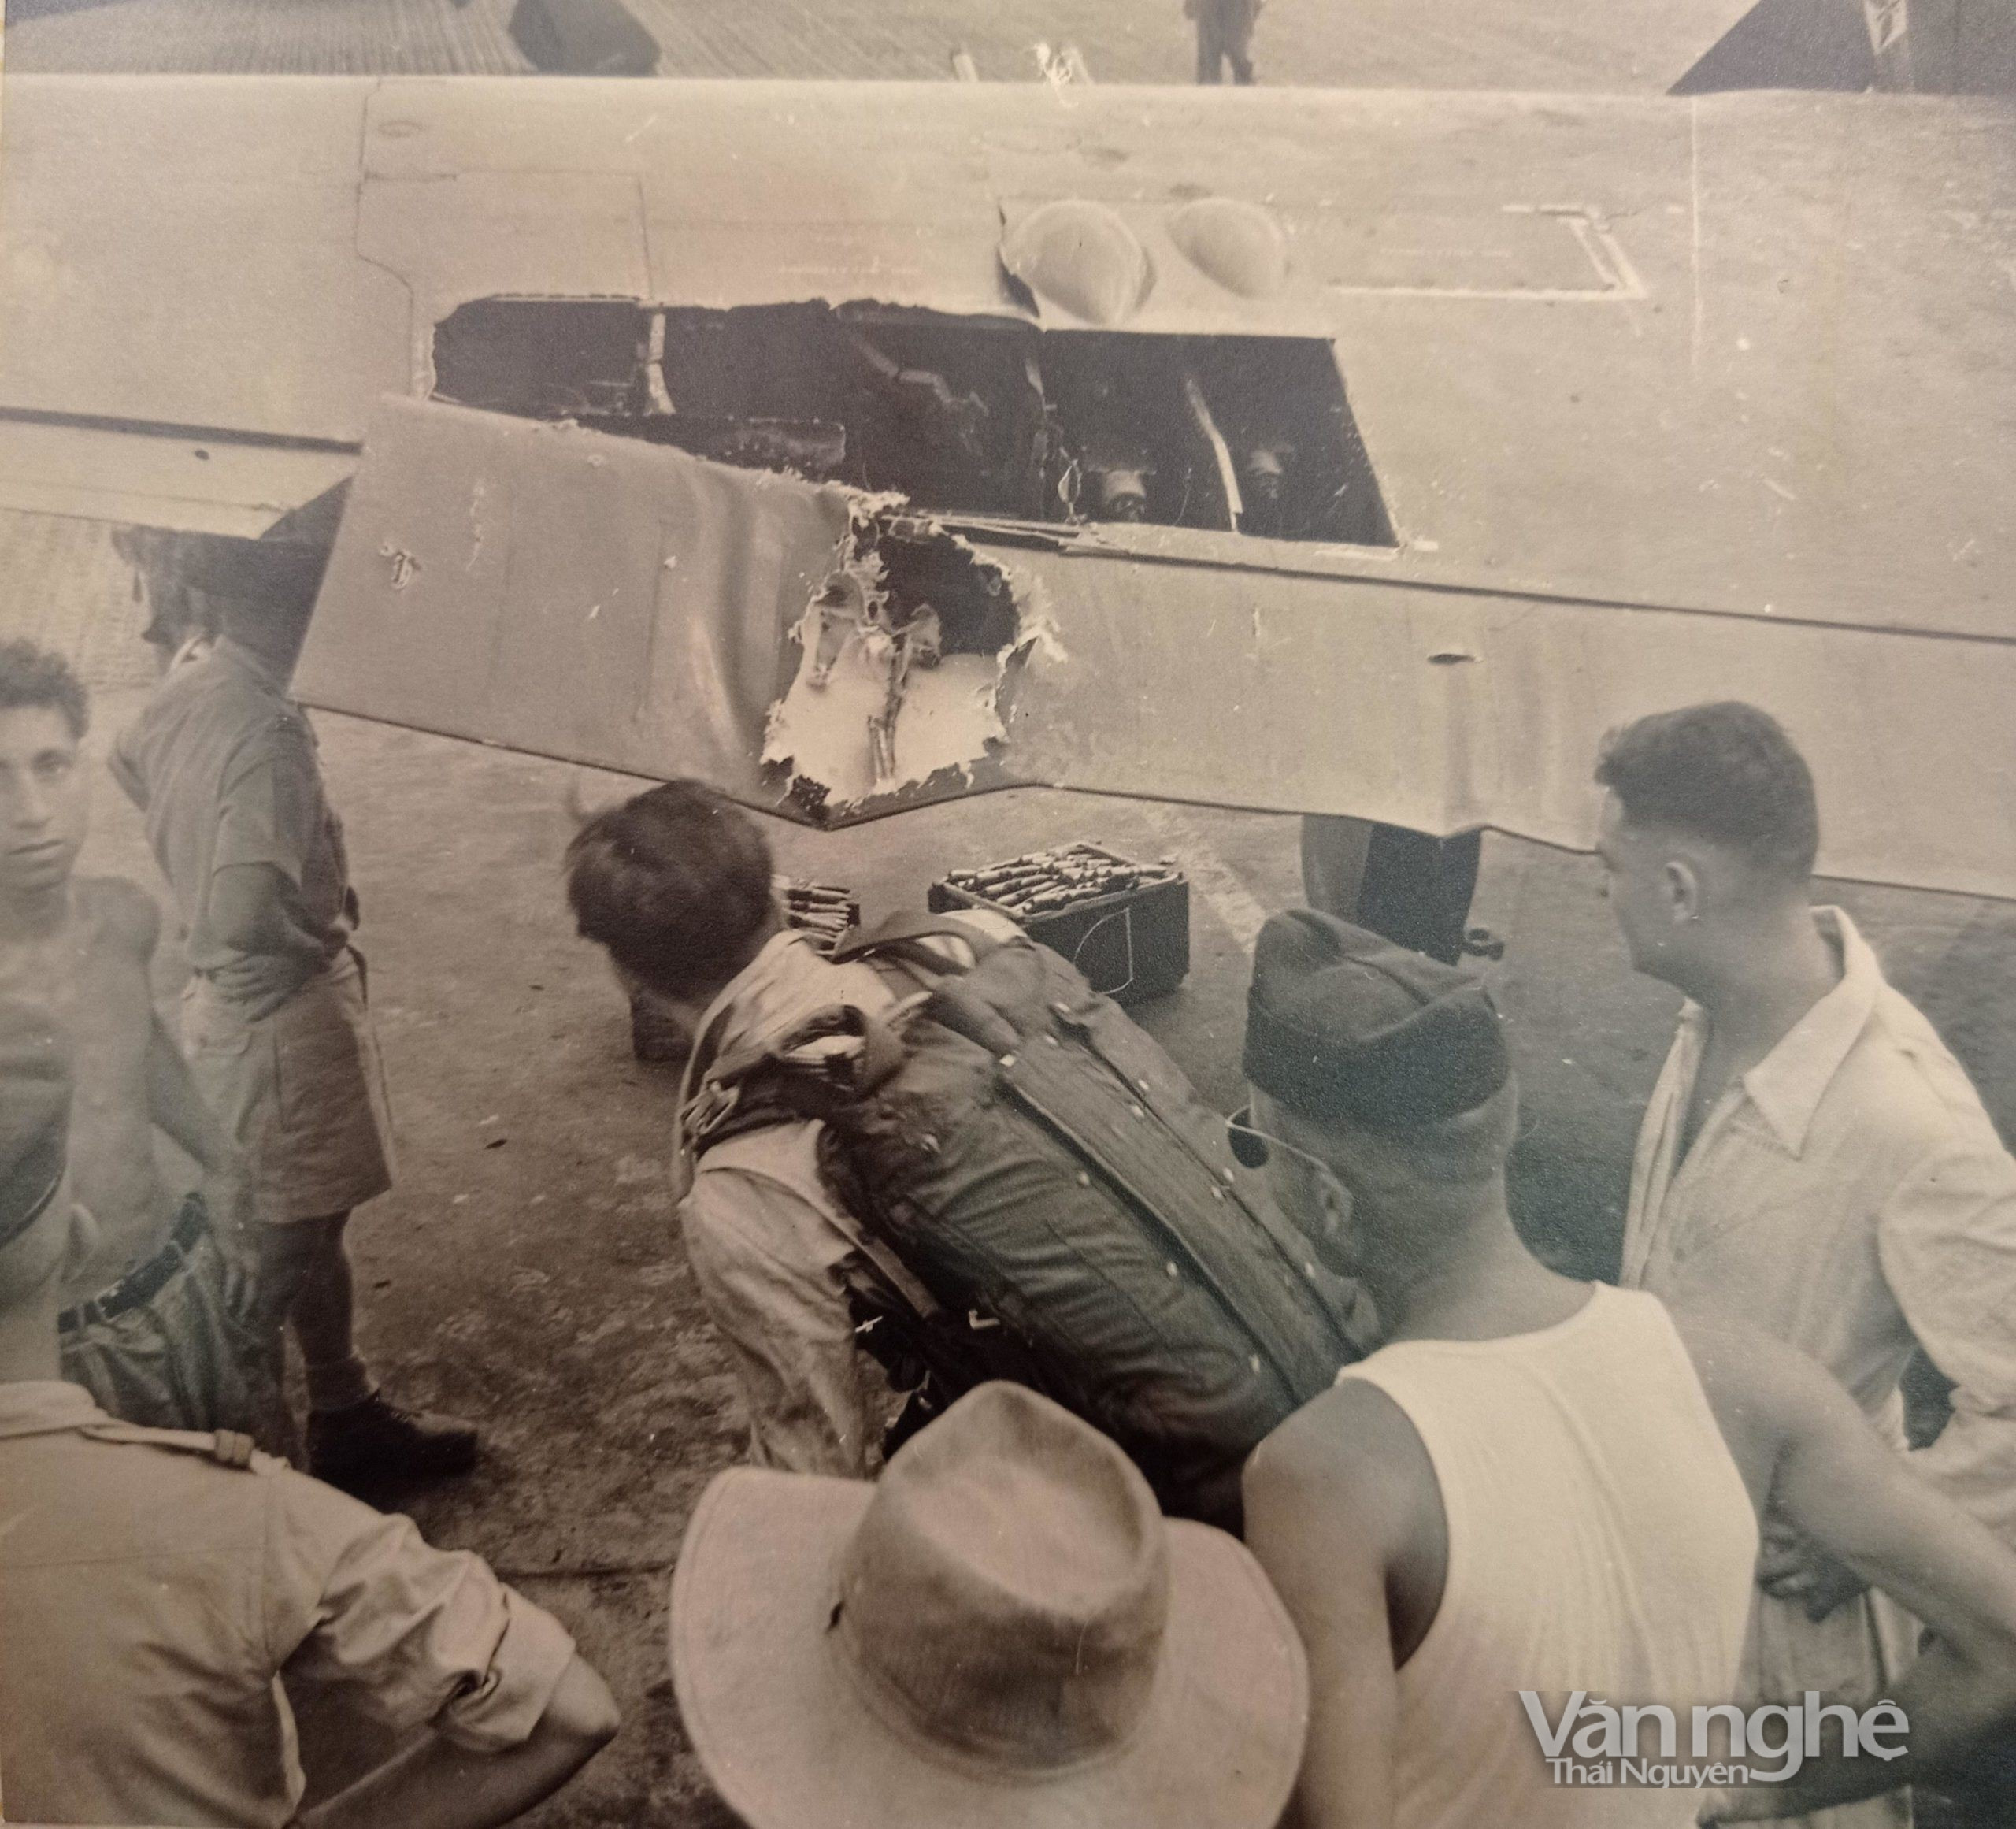 Lính dù bên cạnh chiếc máy bay quân sự vừa trúng hỏa lực Việt Minh